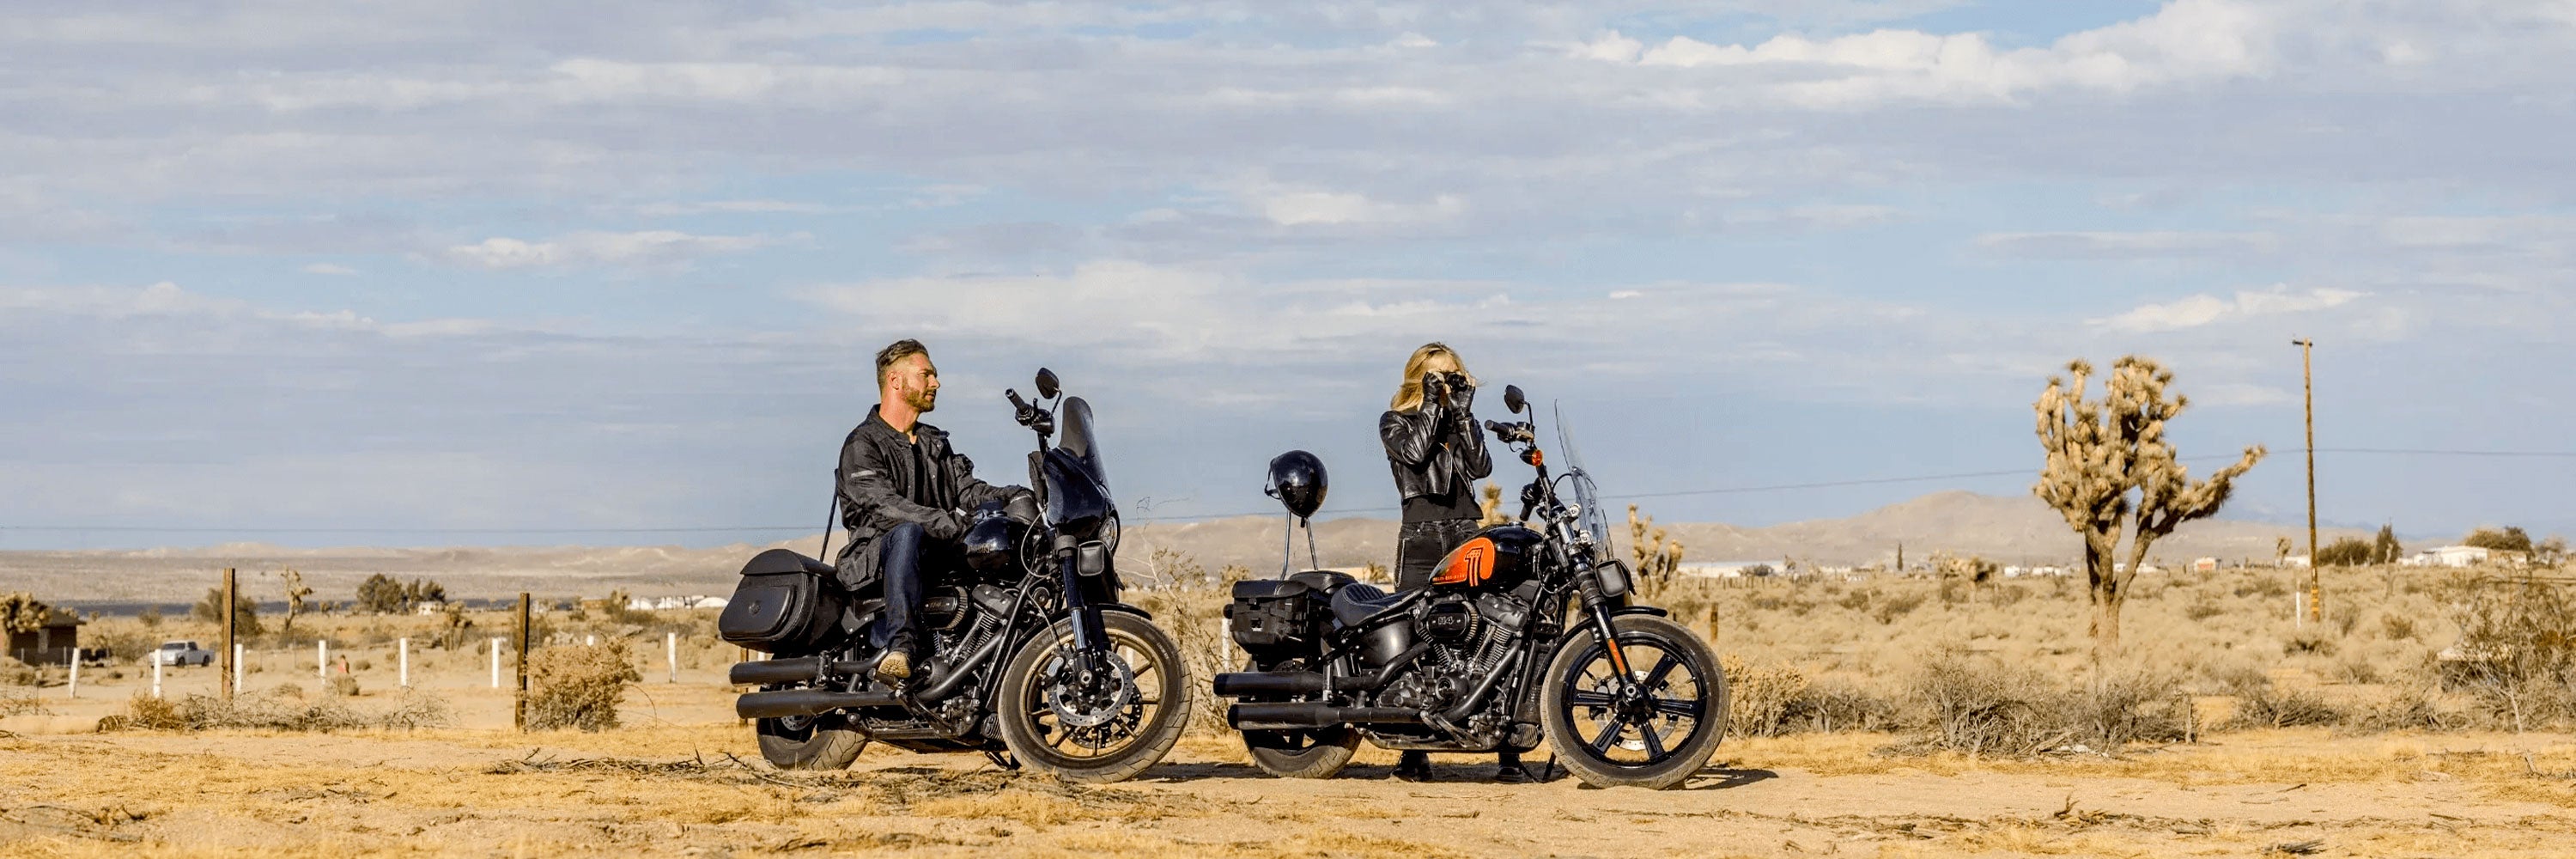 Harley Davidson Tour Packs